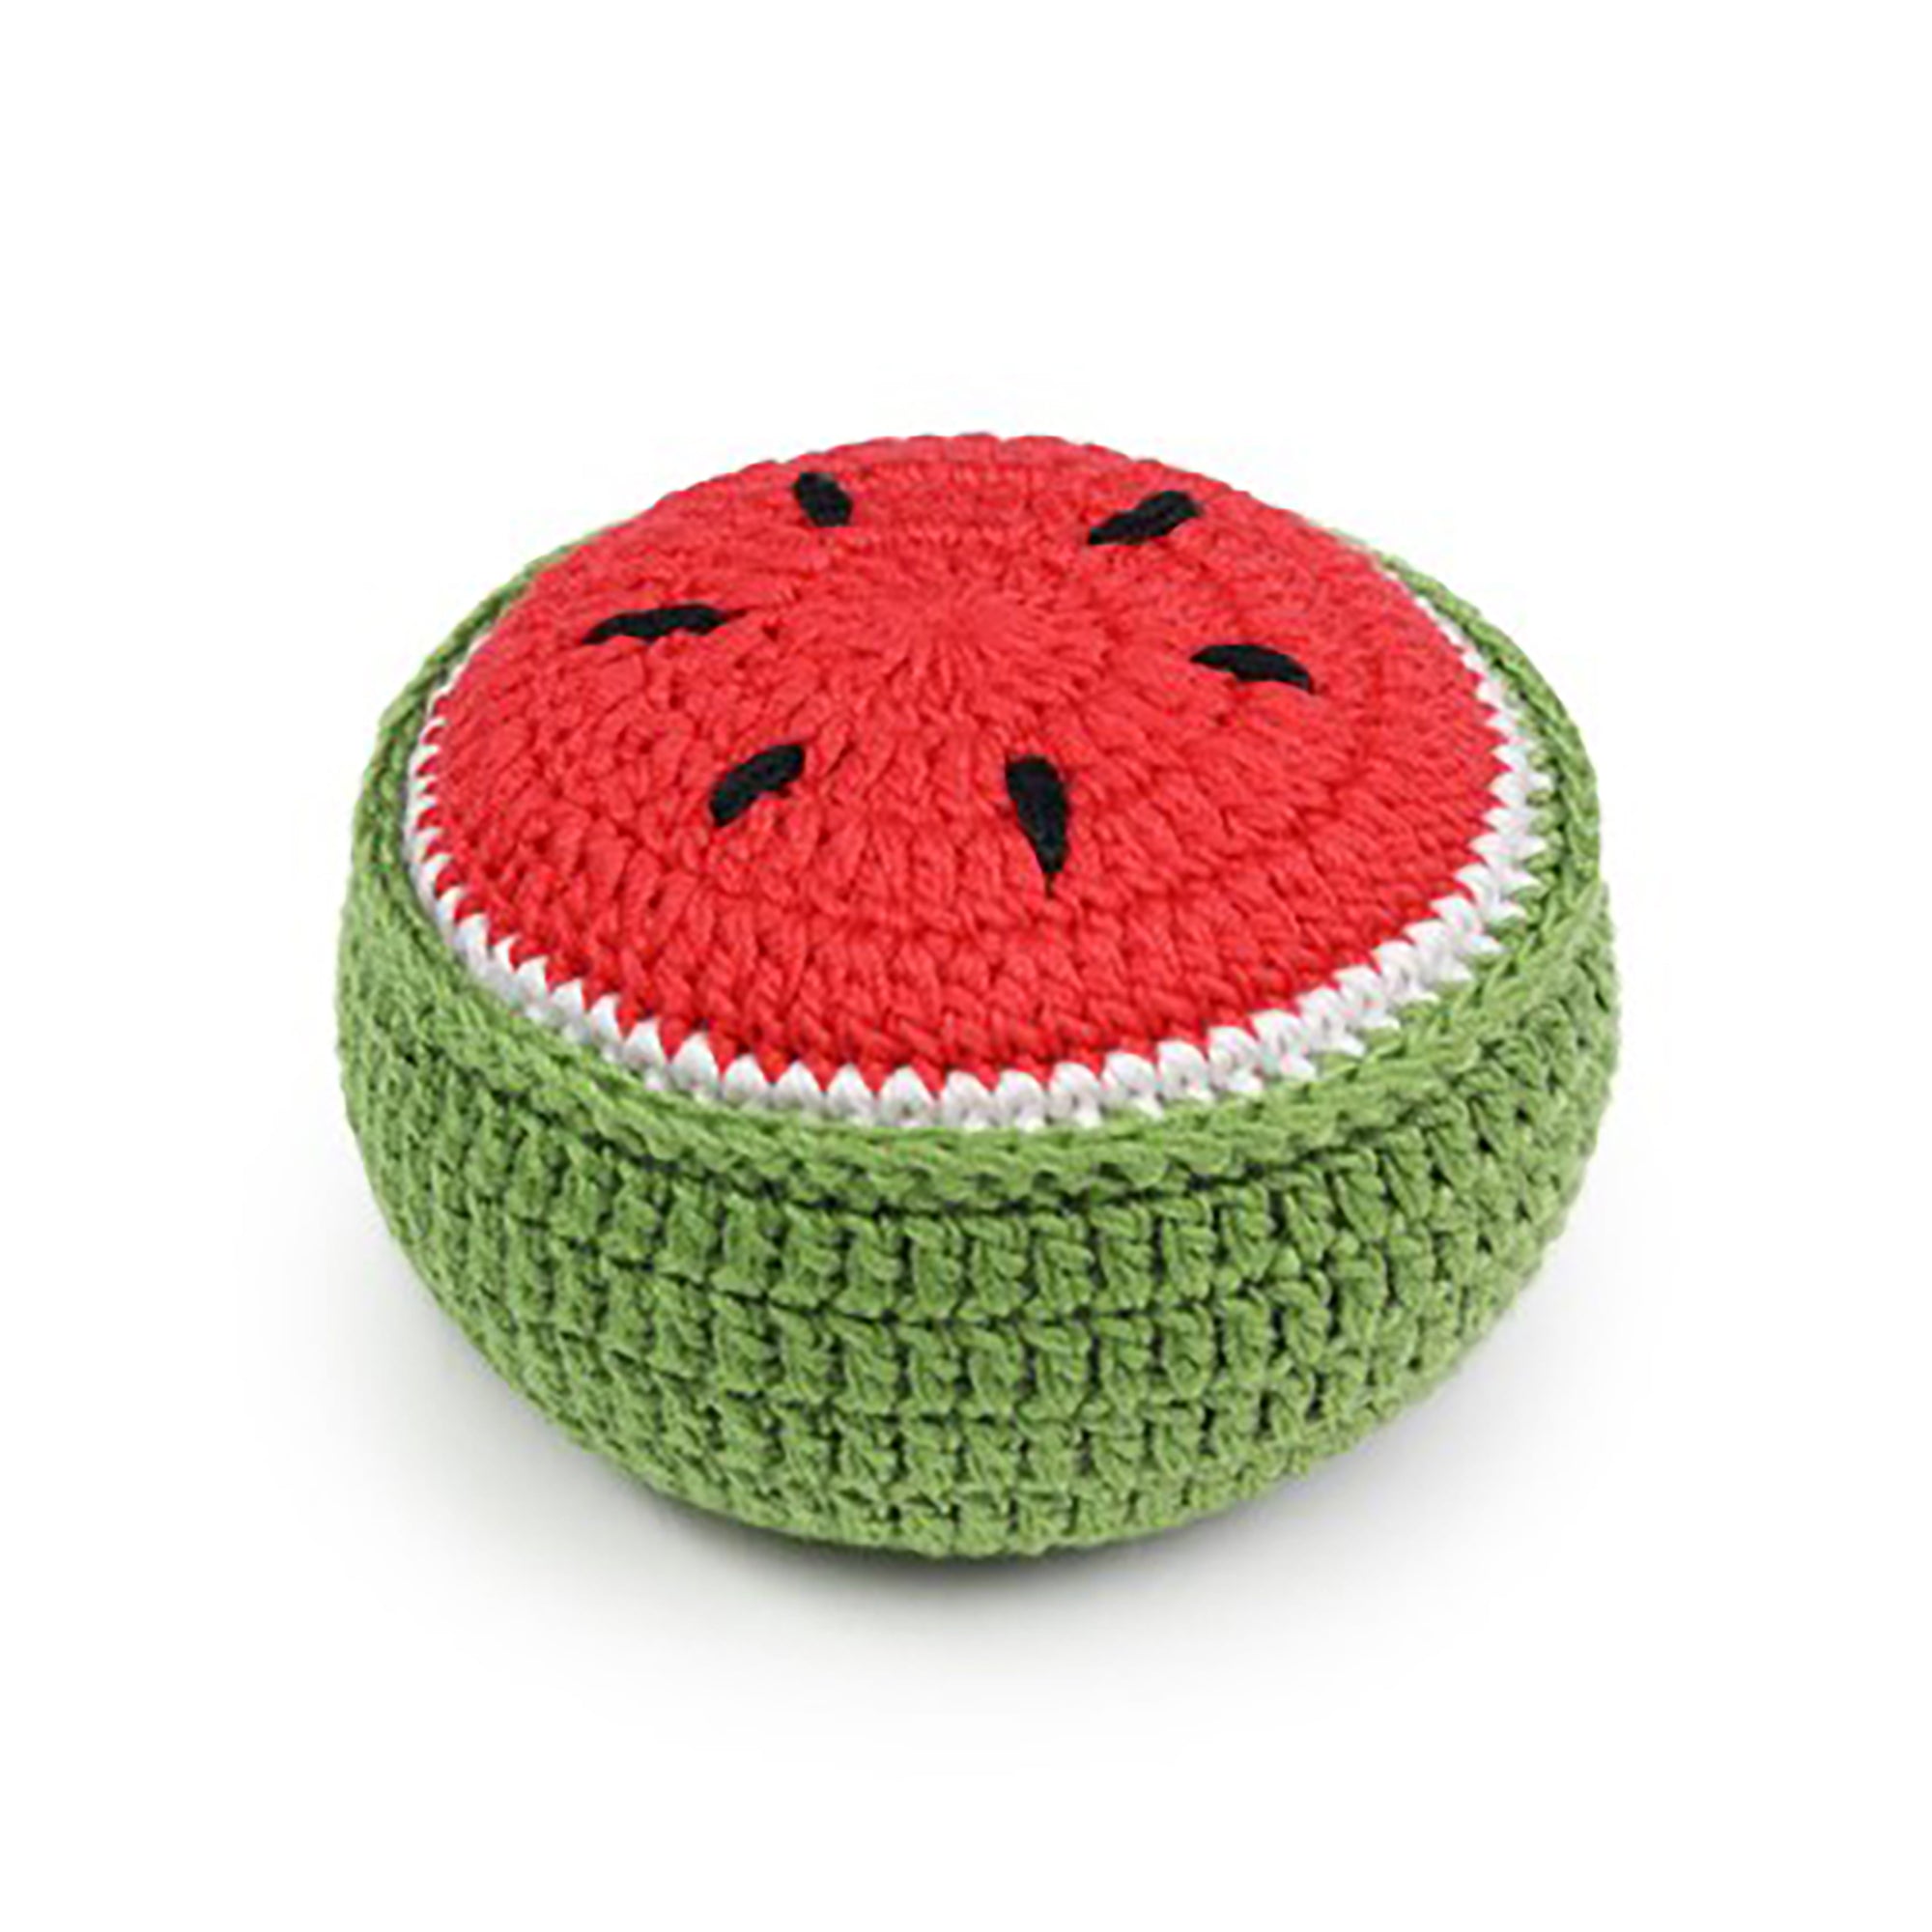 Watermelon Pin Cushion Pattern Weight